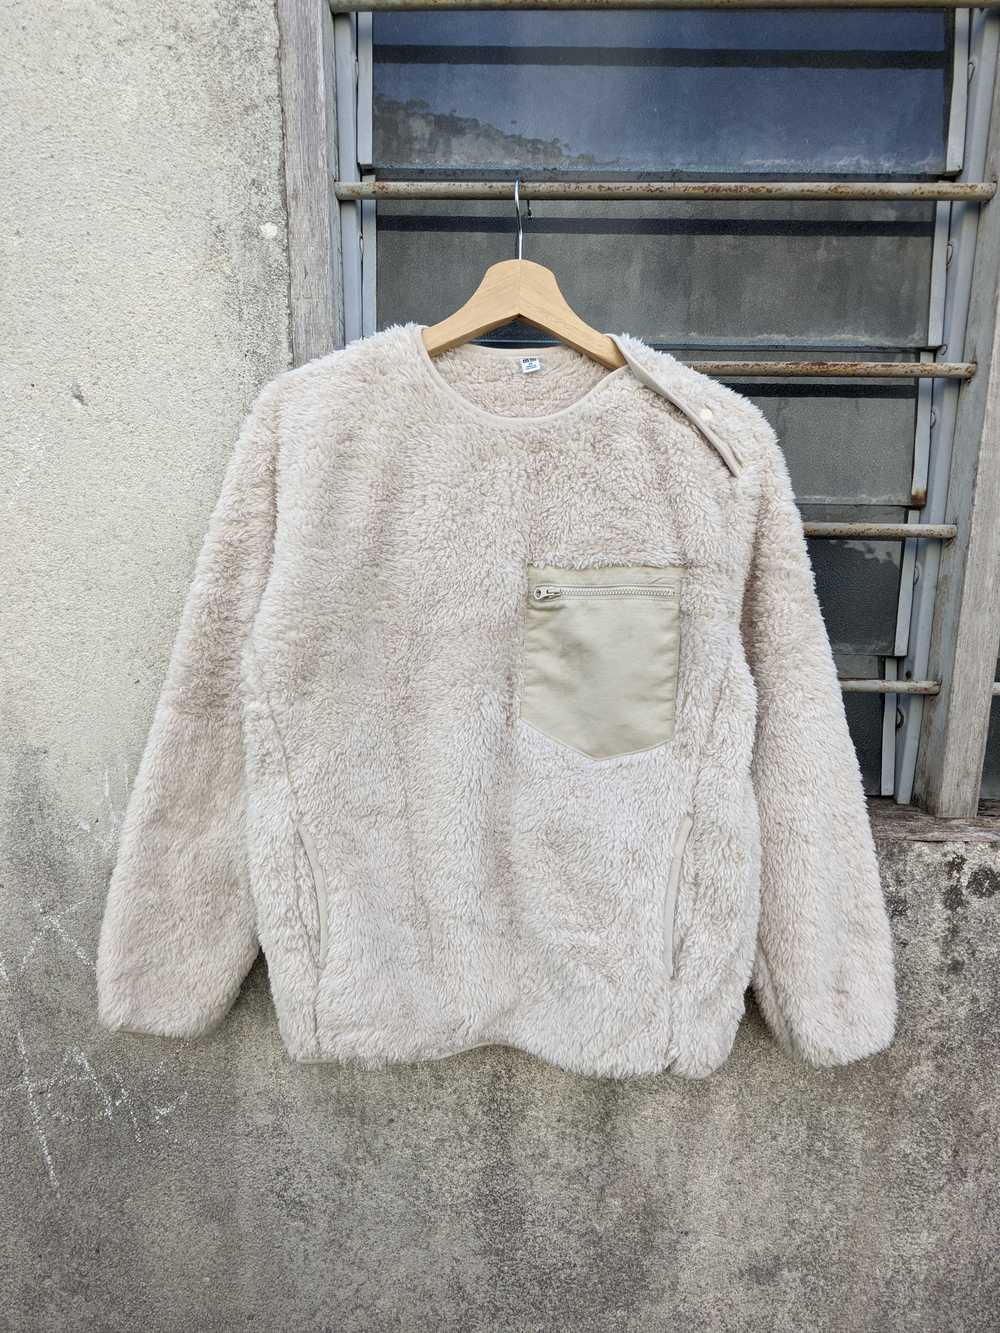 Uniqlo - 🔥 STEALS 🔥 Uniqlo Fleece Sweater - image 5